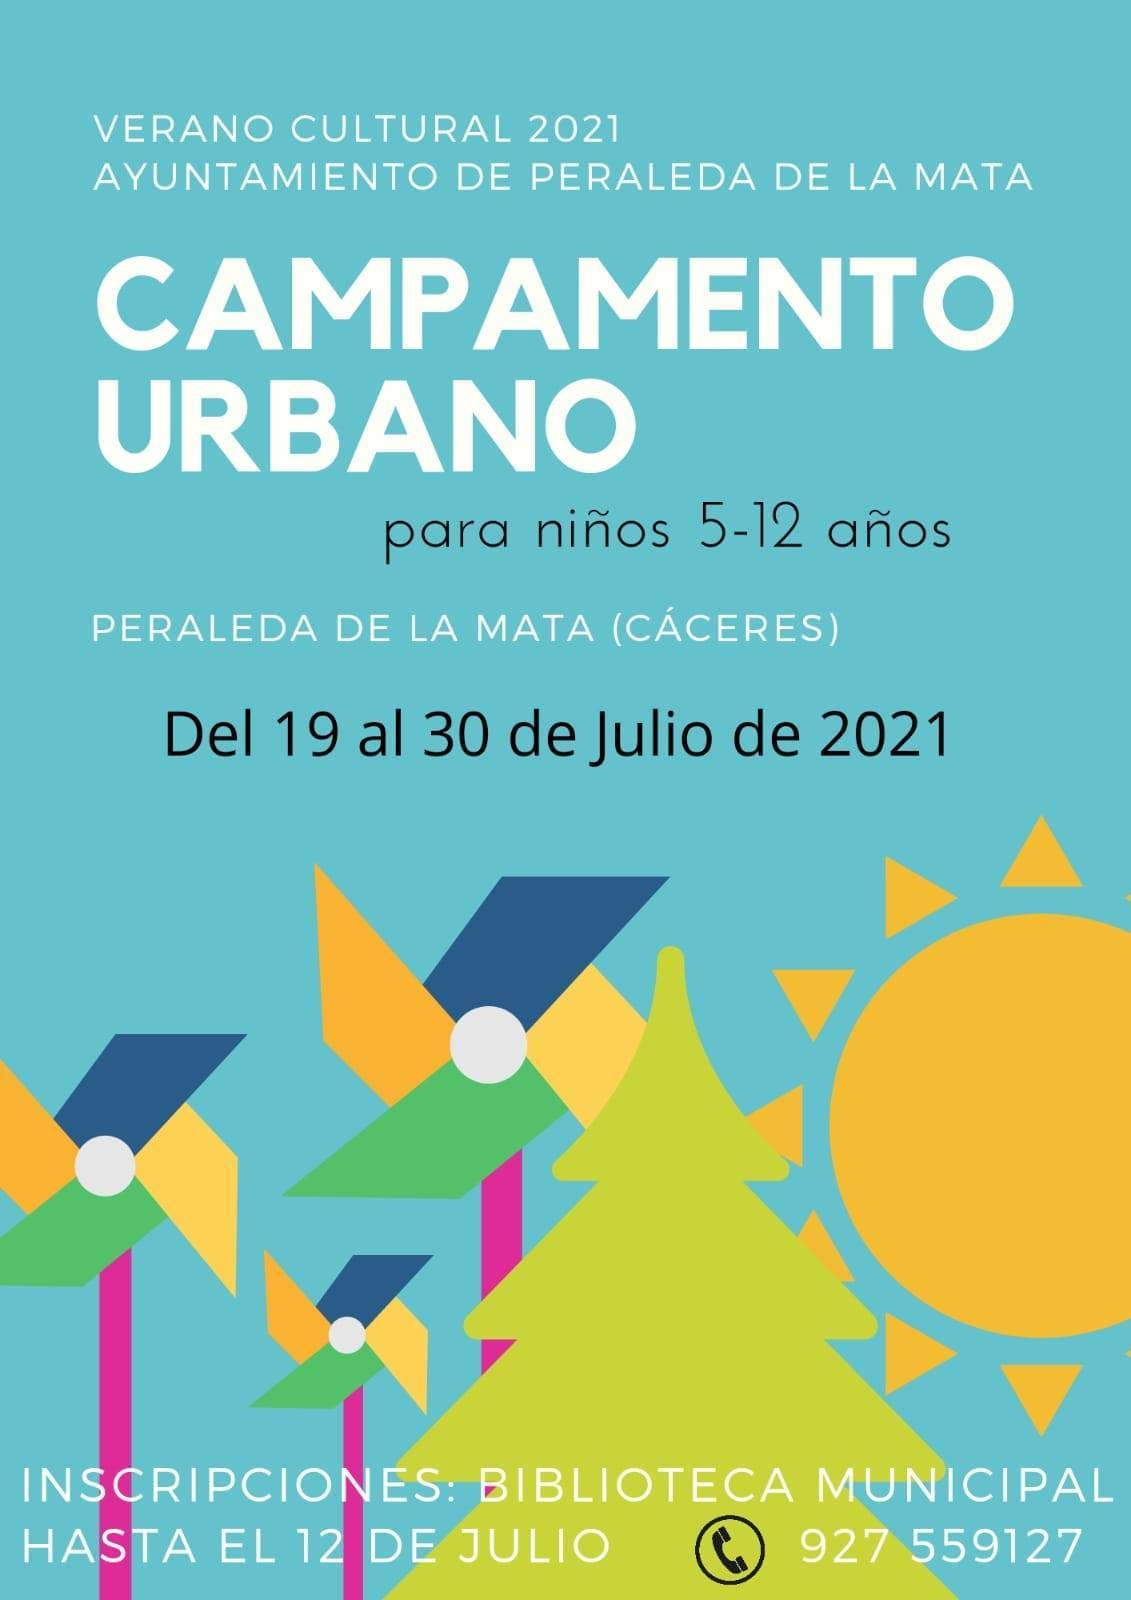 Campamento urbano de verano (2021) - Peraleda de la Mata (Cáceres)